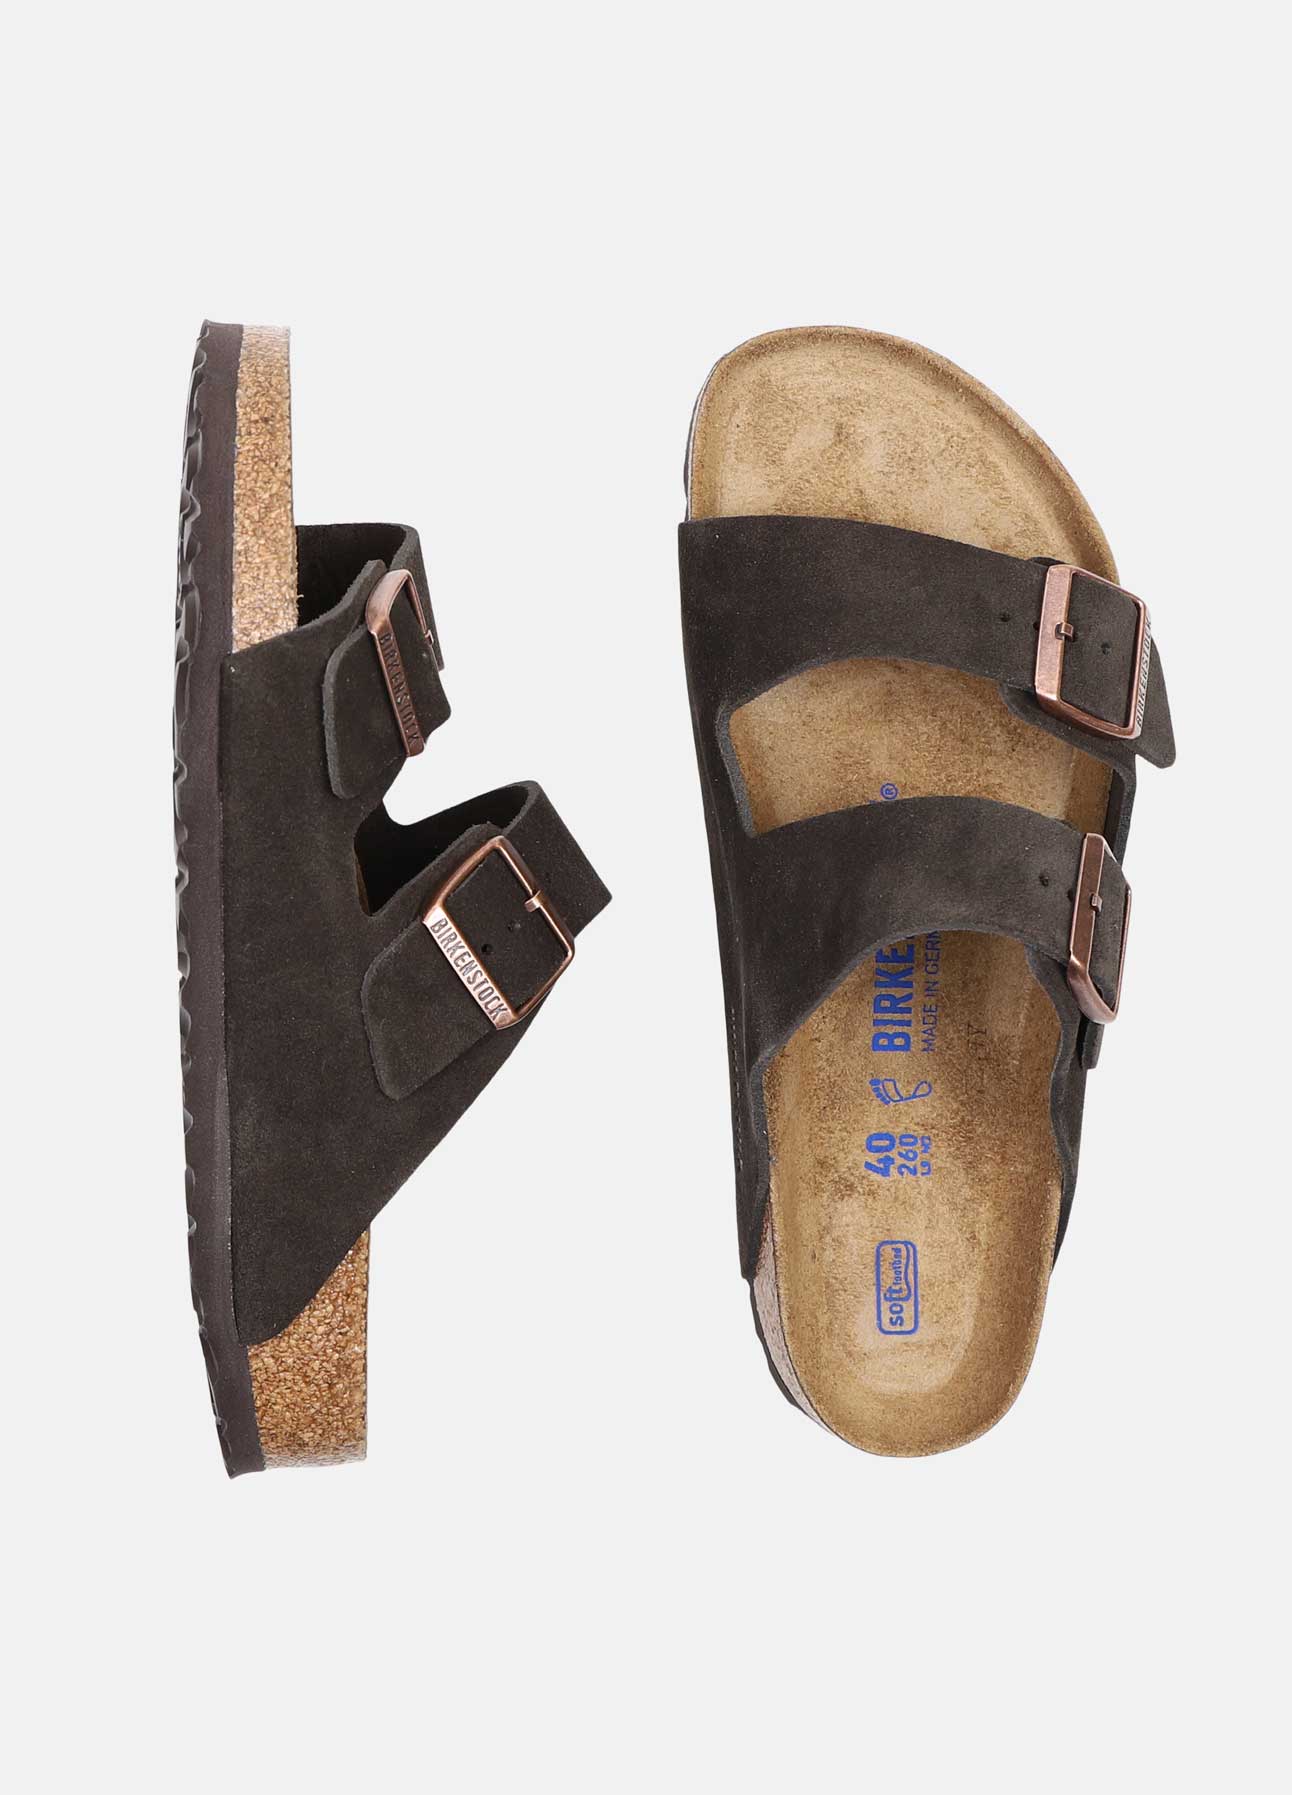 Arizona sandaler fra Birkenstock | Shop hos troelstrup.com